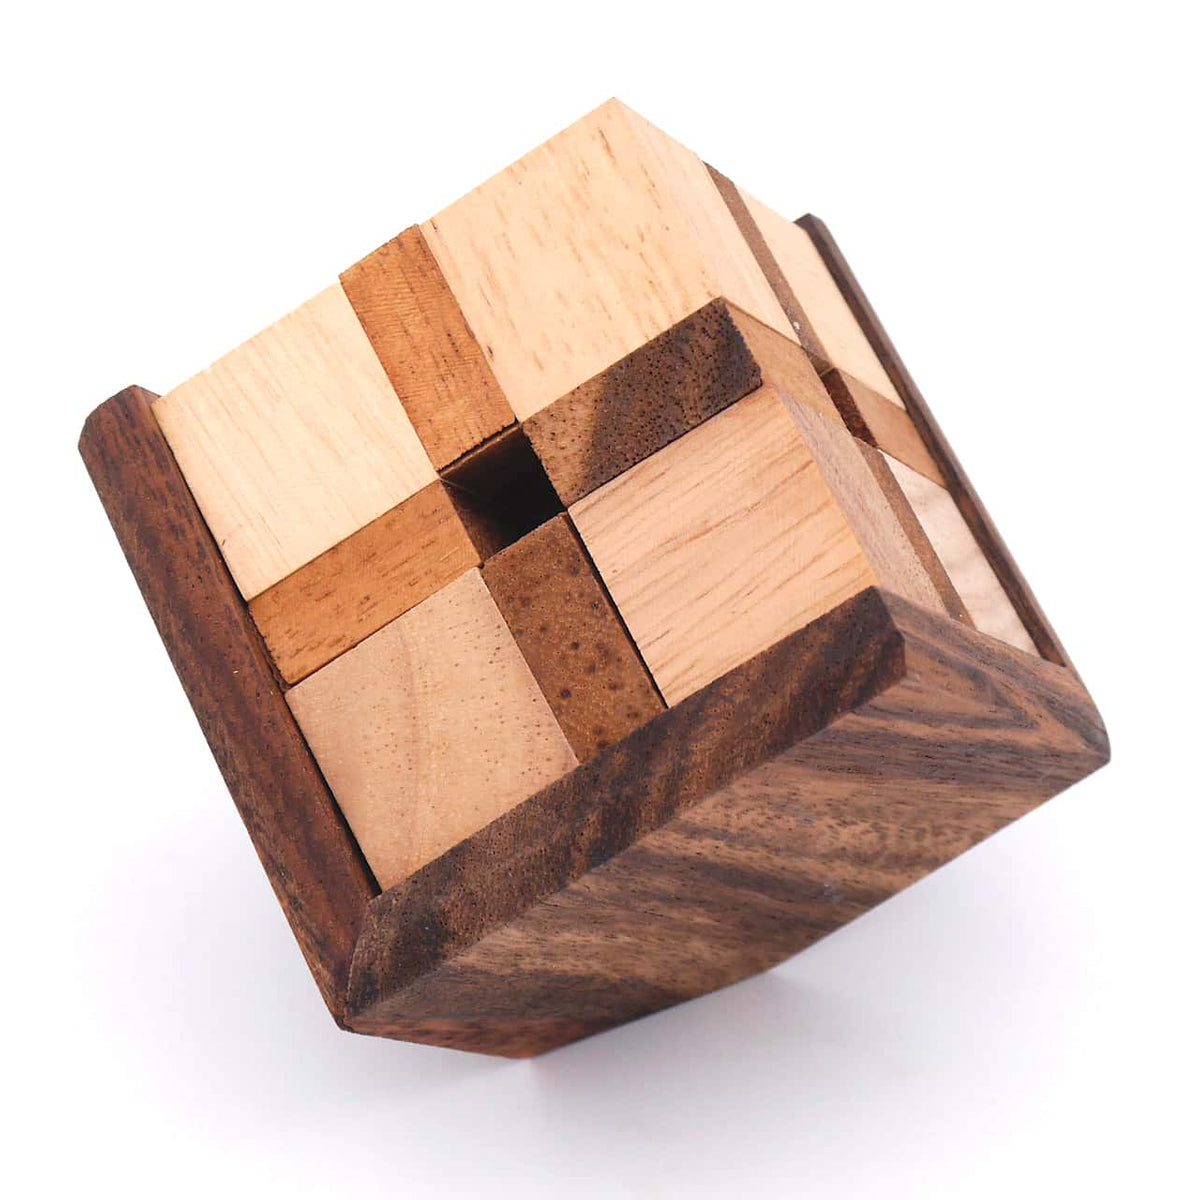 Zusammengebautes Denkspiel aus Holz bestehend aus 8 Teilen und einem Rahmen.